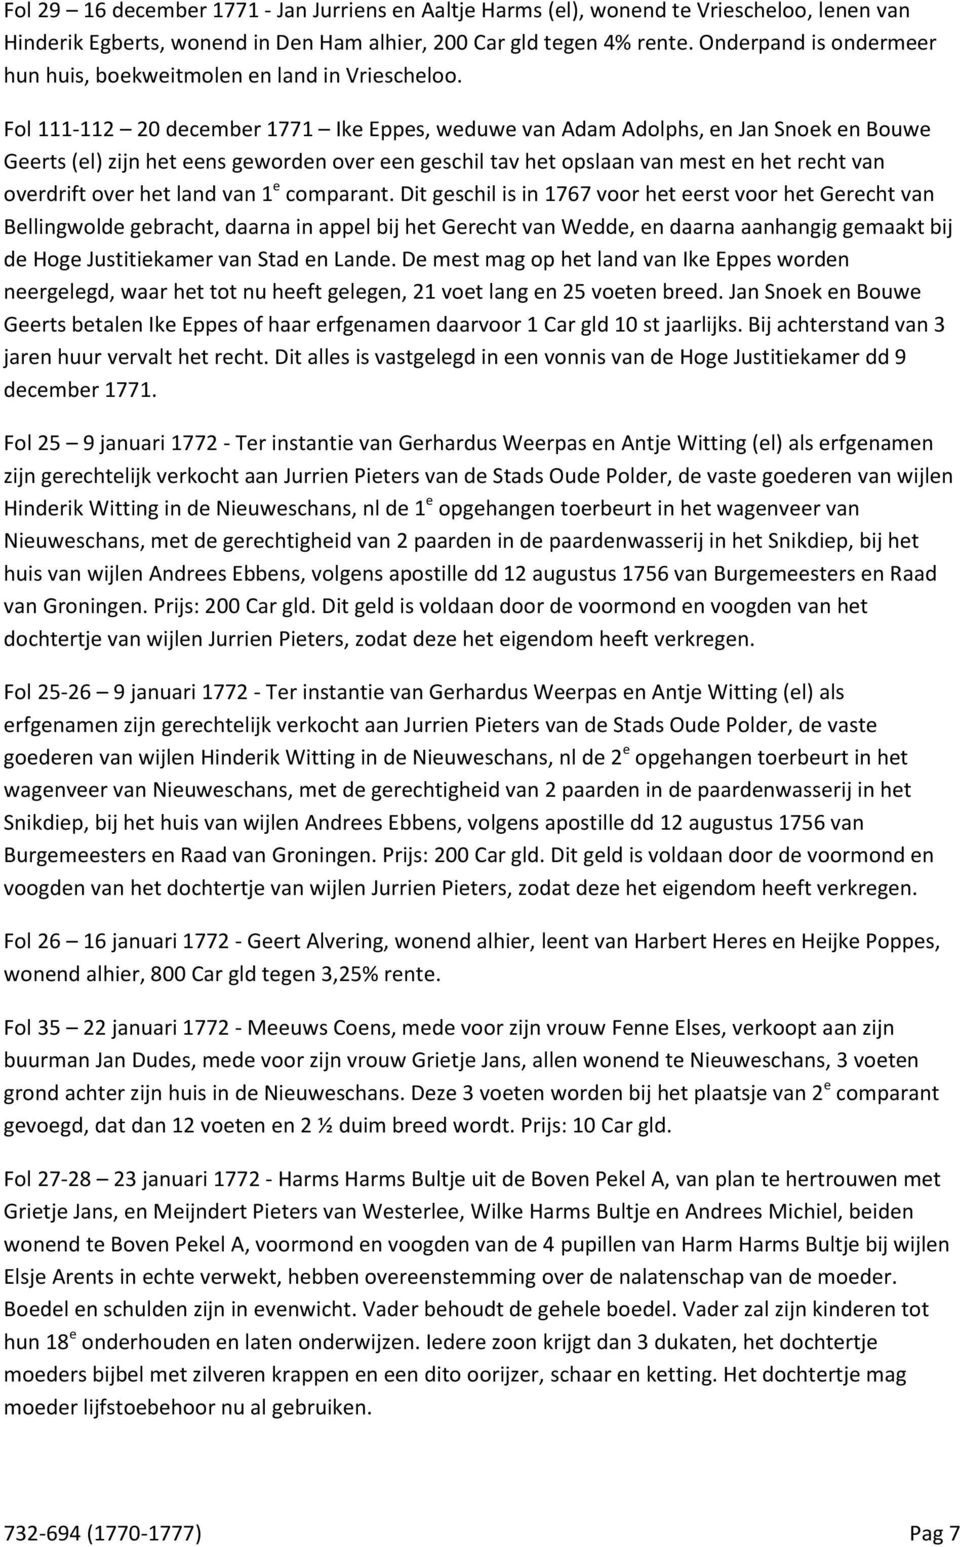 Fol 111-112 20 december 1771 Ike Eppes, weduwe van Adam Adolphs, en Jan Snoek en Bouwe Geerts (el) zijn het eens geworden over een geschil tav het opslaan van mest en het recht van overdrift over het